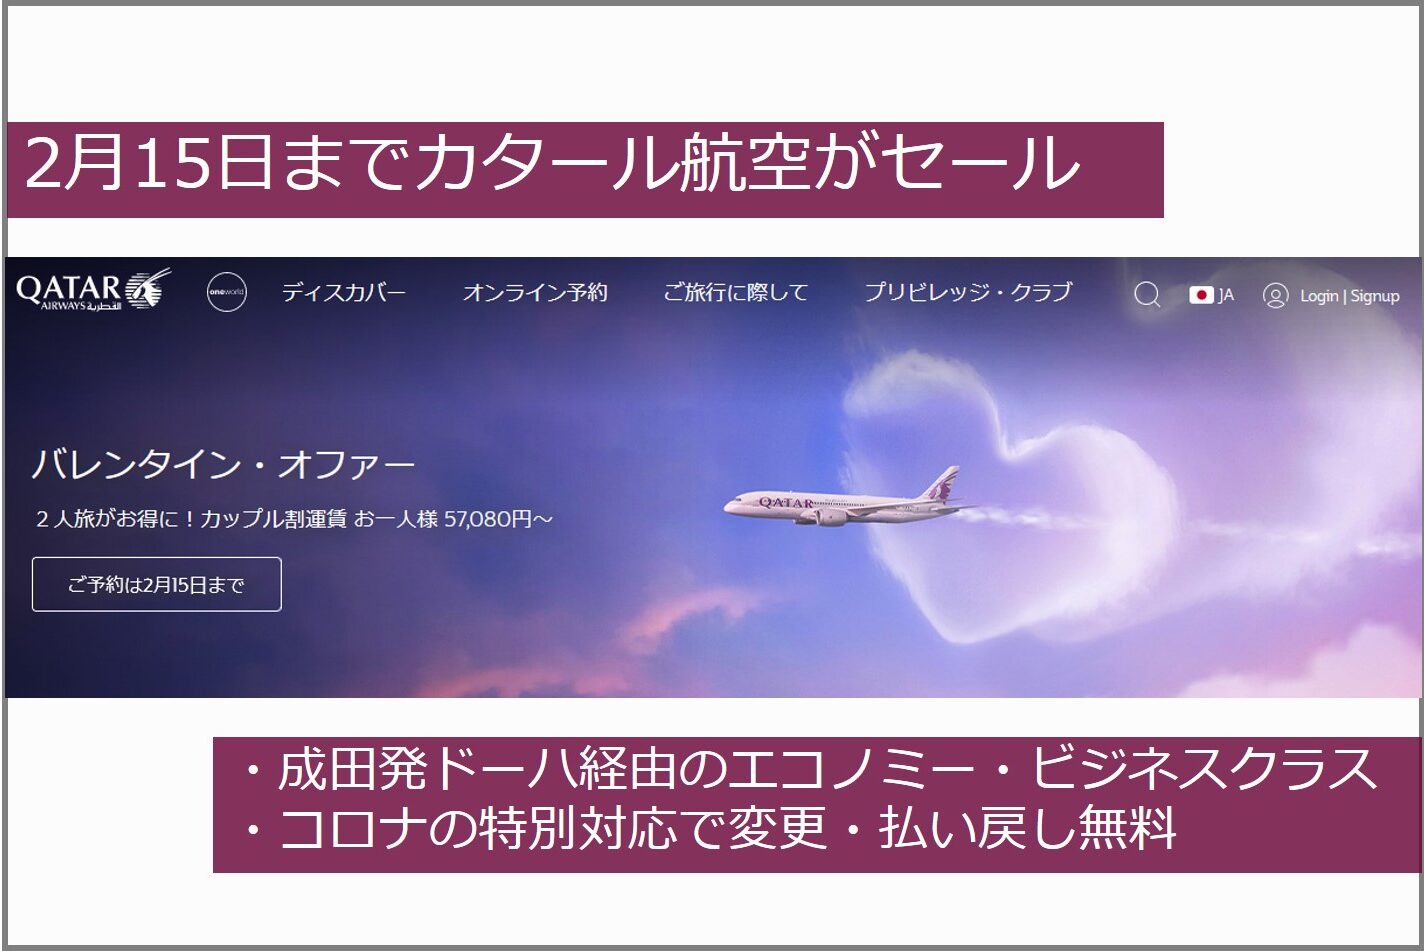 成田発のカタール航空のセールが実施中。2月15日まで | 今日もどこかに旅したい